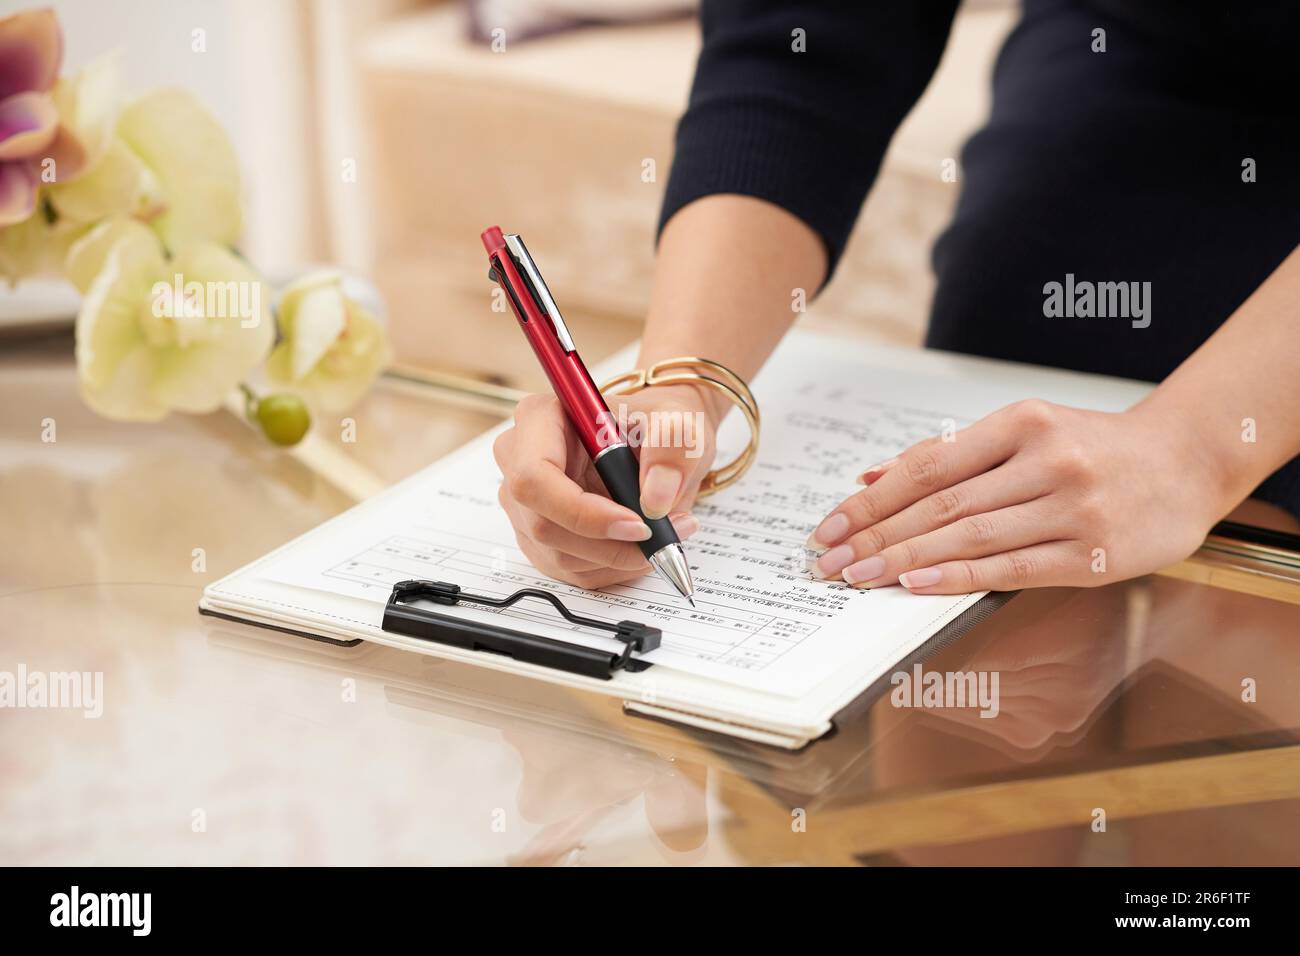 La mano della donna che compila cartelle cliniche e questionari Foto Stock